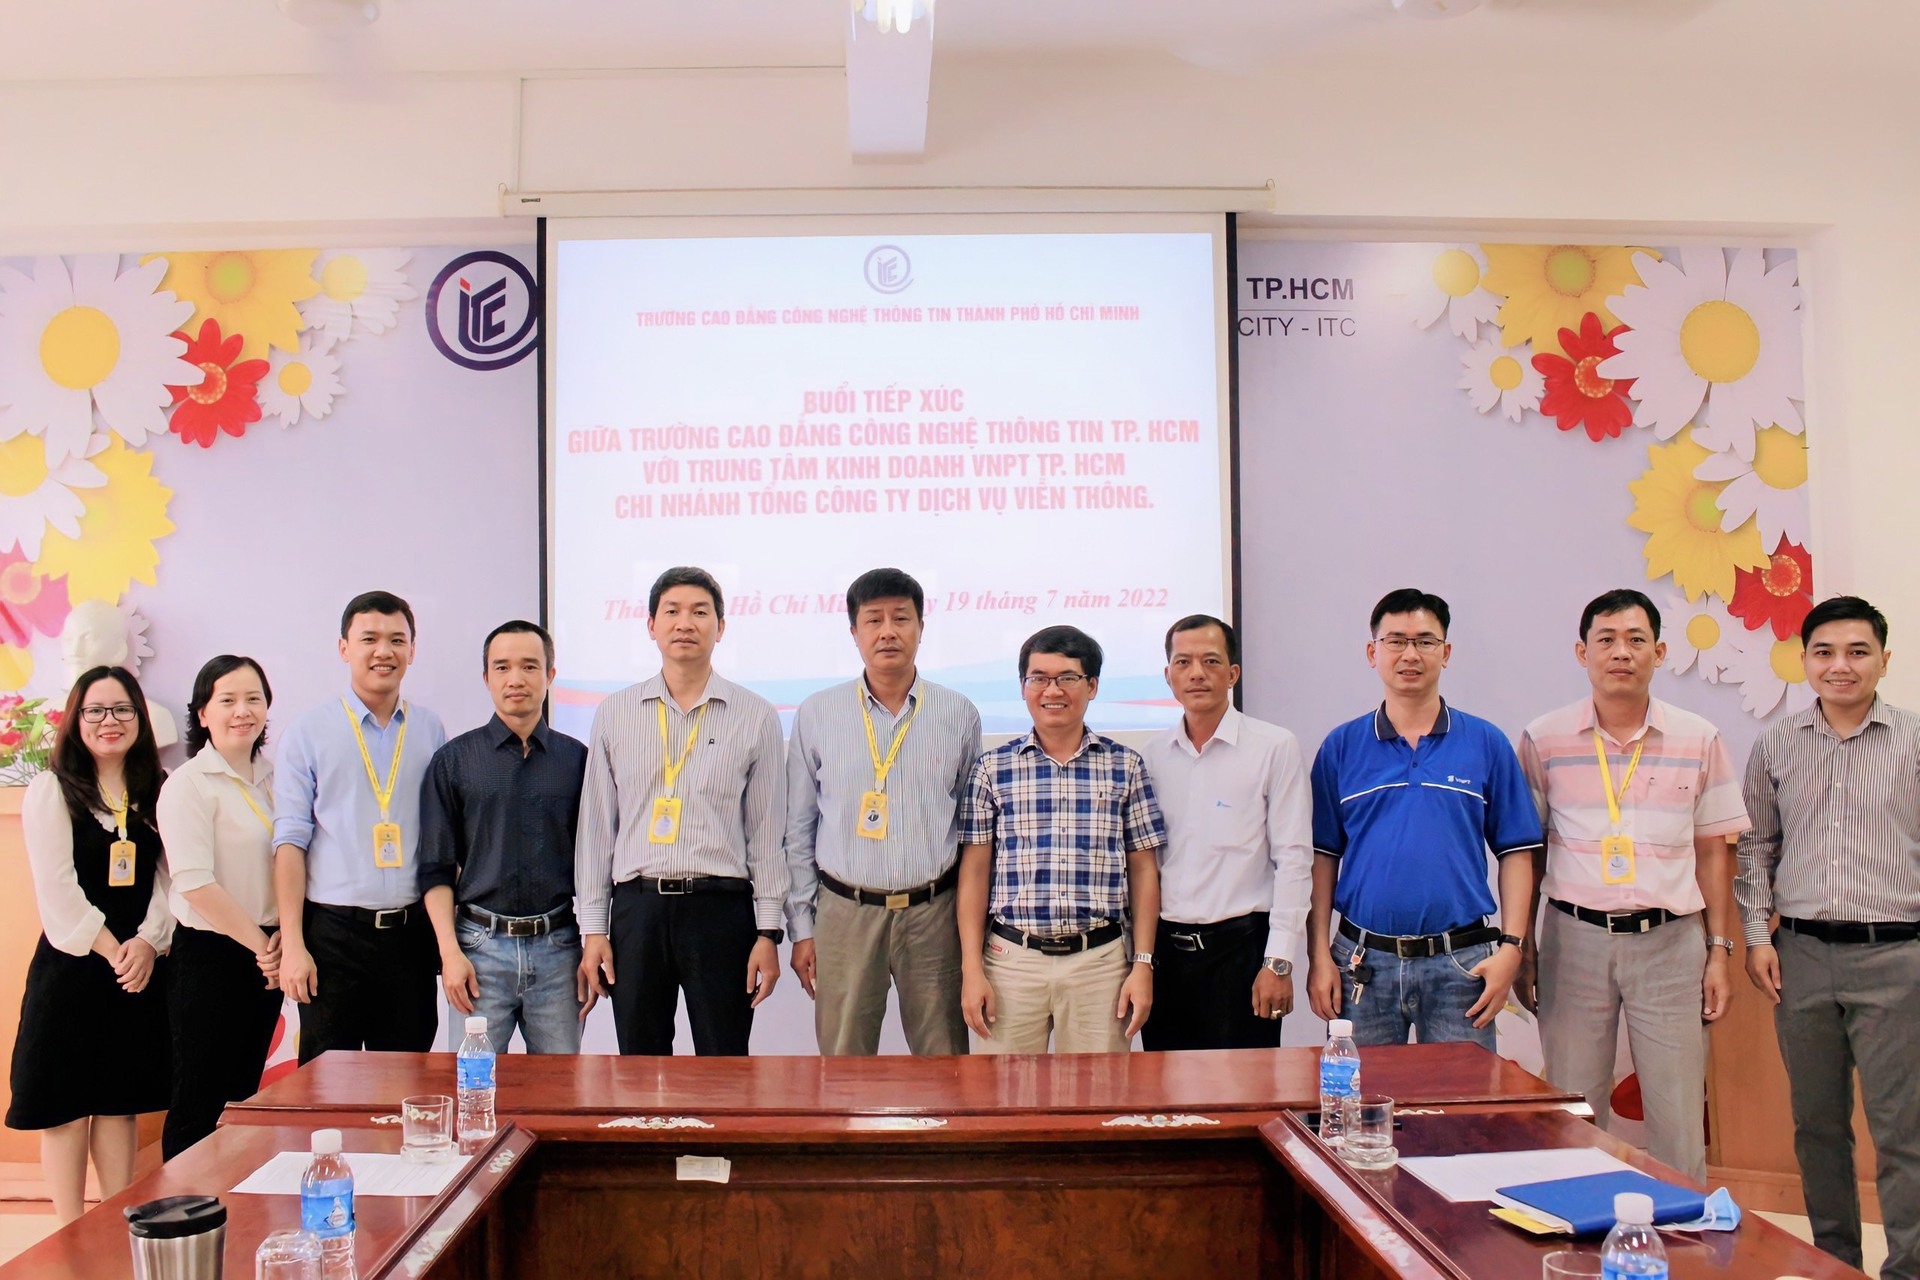 Buổi làm việc giữa Trường ITC với Trung tâm kinh doanh VNPT TP. HCM - P. BHKV Bình Chánh.